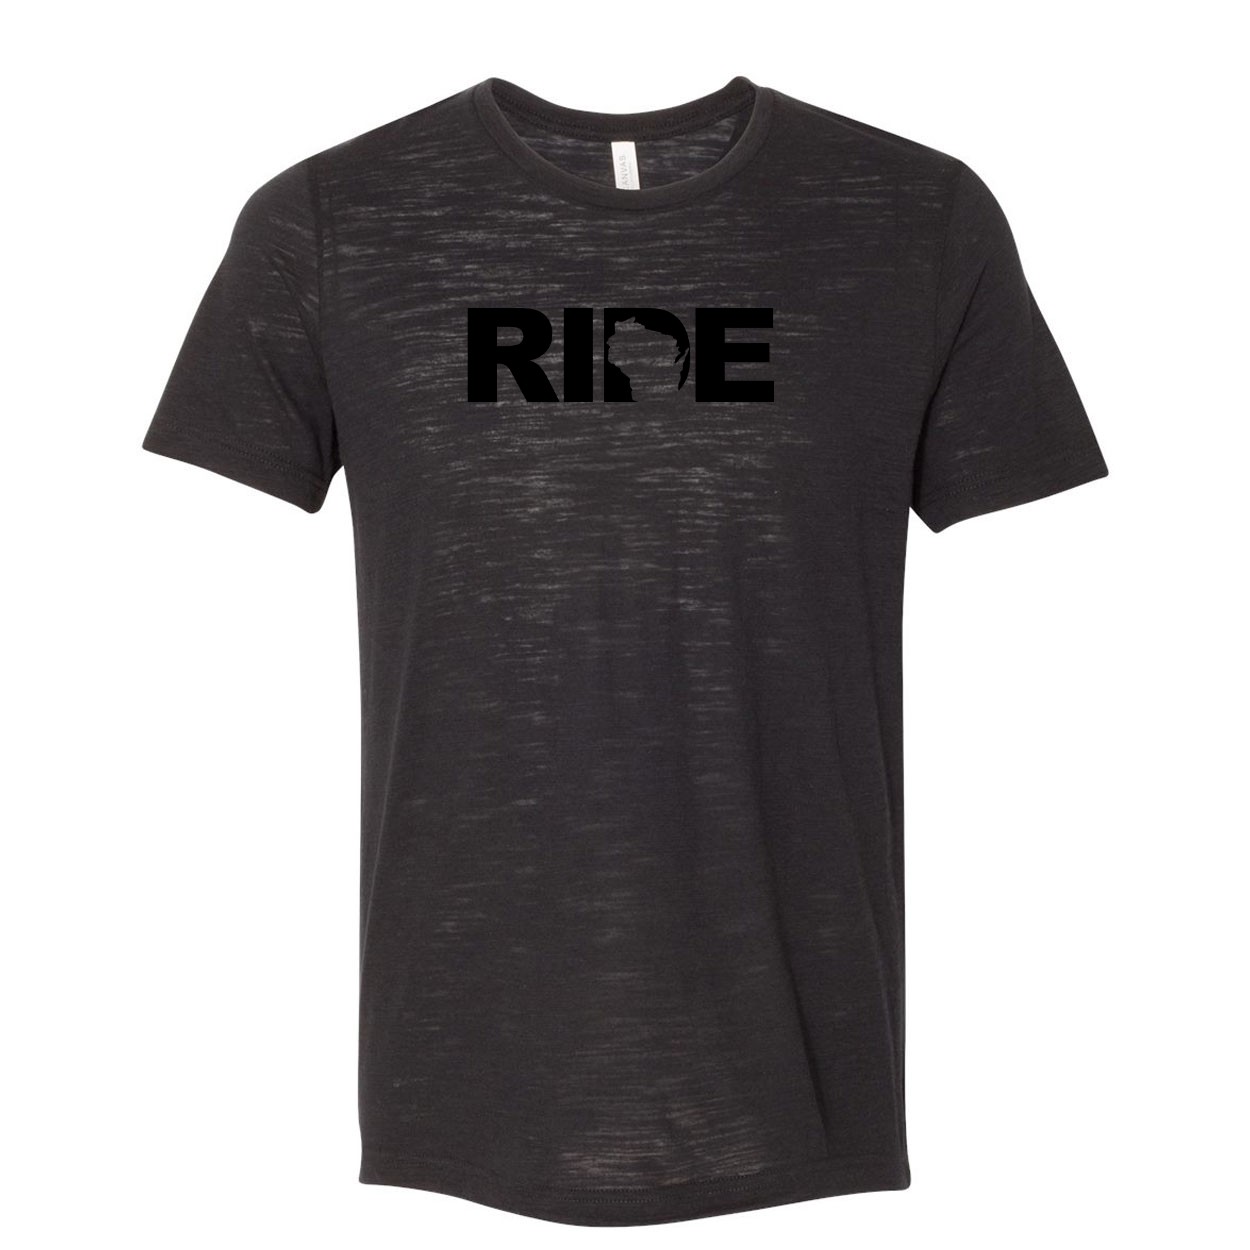 Ride Wisconsin Classic Unisex Premium Texture T-Shirt Solid Black Slub (Black Logo)